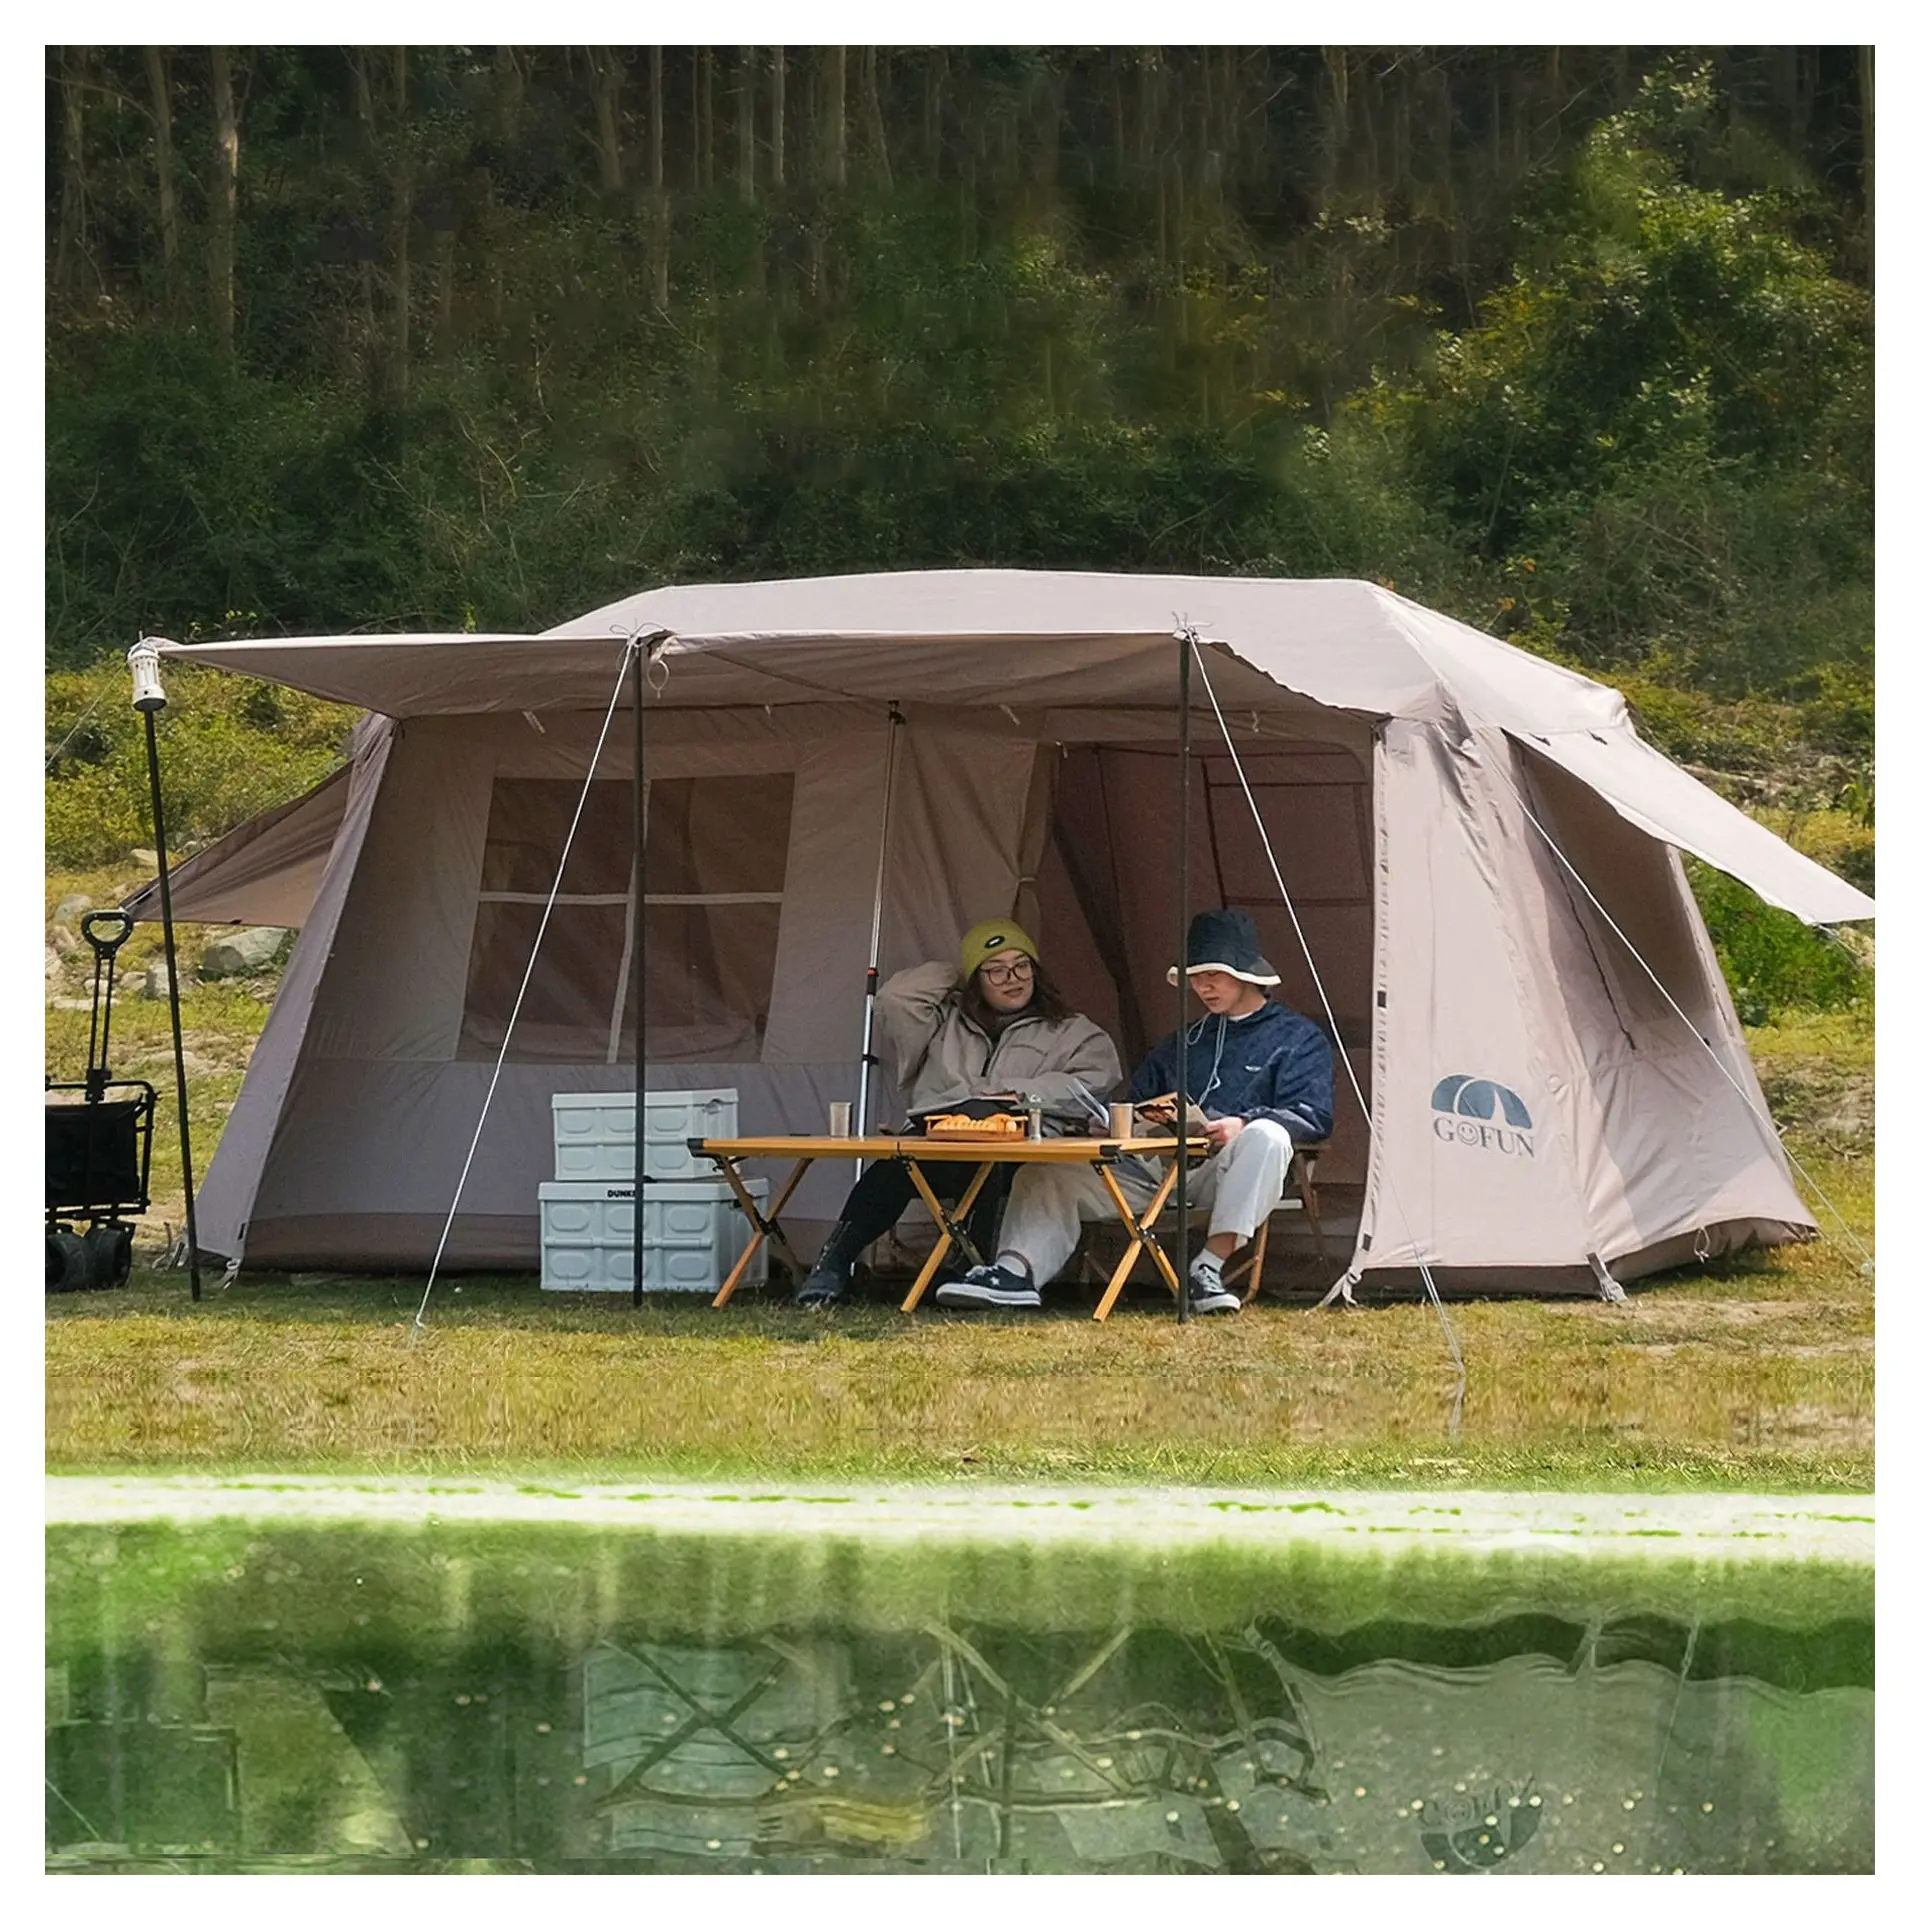 GOFUN tetto crinale 13 Trip tenda, prodotto caldo tende campeggio all'aperto pesante, tende per feste personalizzate per eventi all'aperto/